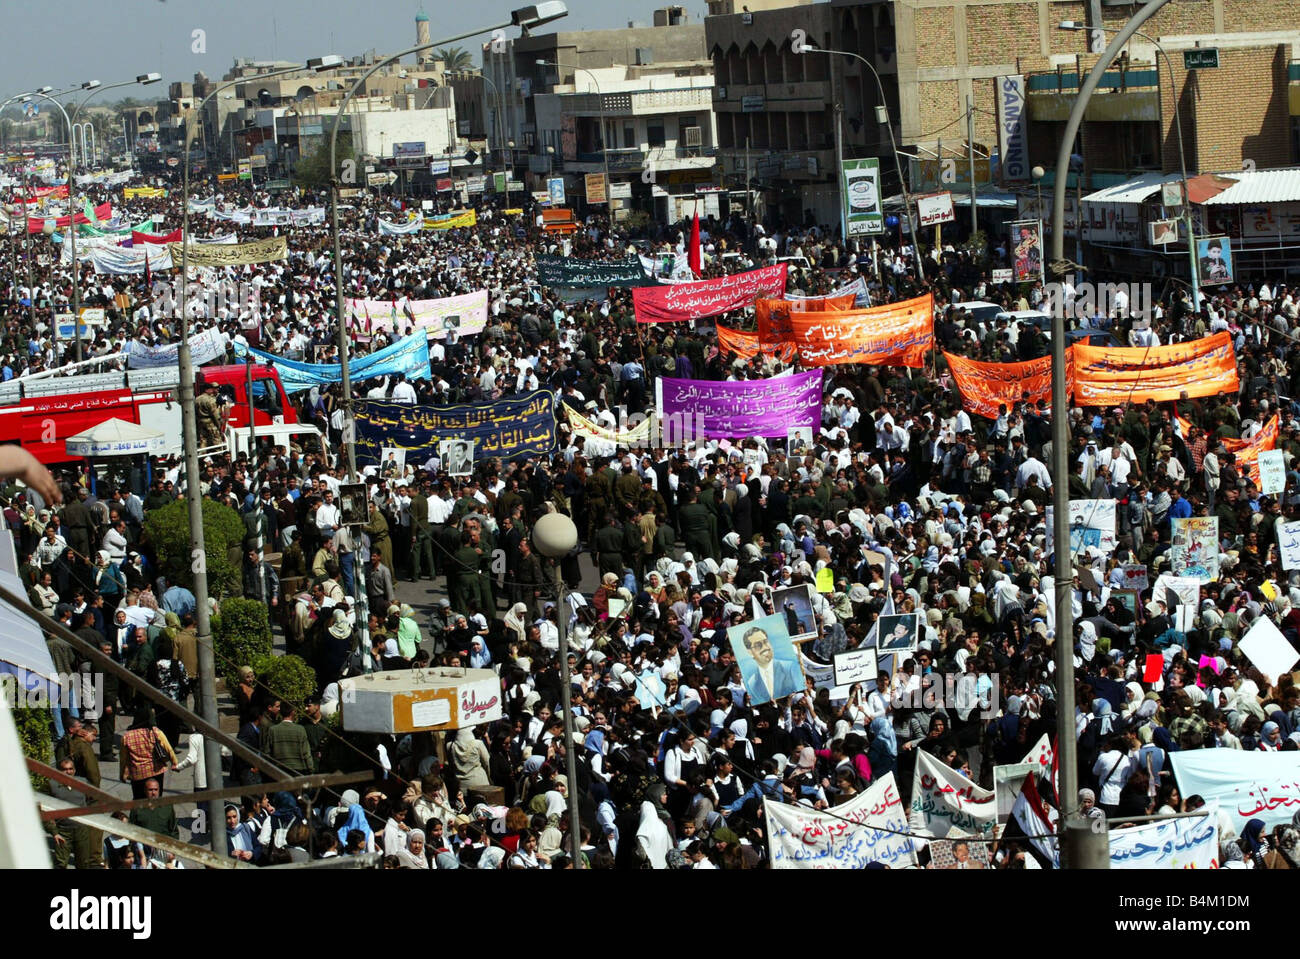 Un gouvernement irakien anti-américain parrainé de démonstration sur une rue de Bagdad avant l'invasion menée par les Etats-Unis Notre photo montre la foule crier et bannières en bas d'une route importante mars à Bagdad Banque D'Images